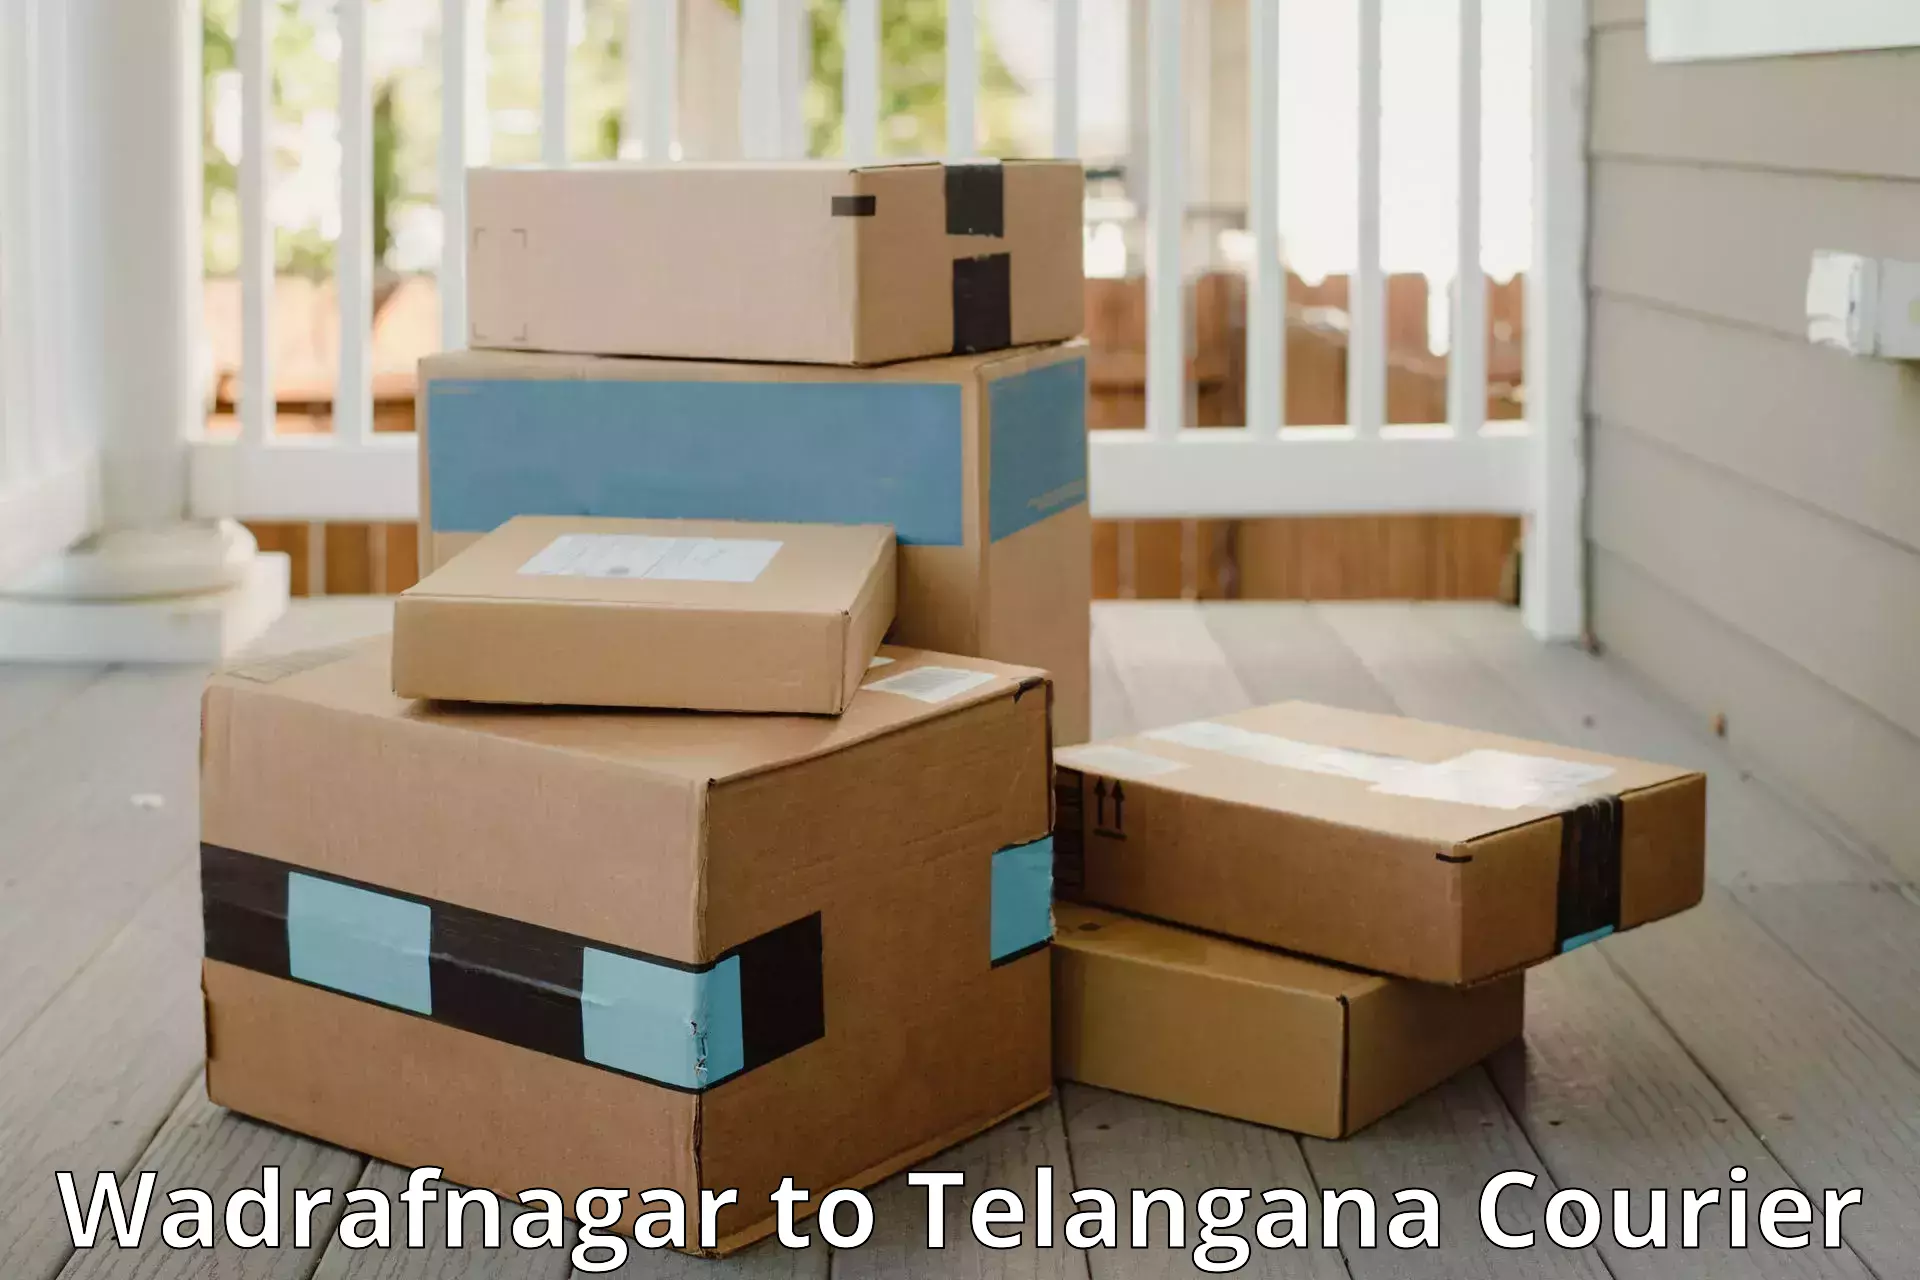 Emergency baggage service Wadrafnagar to Manuguru